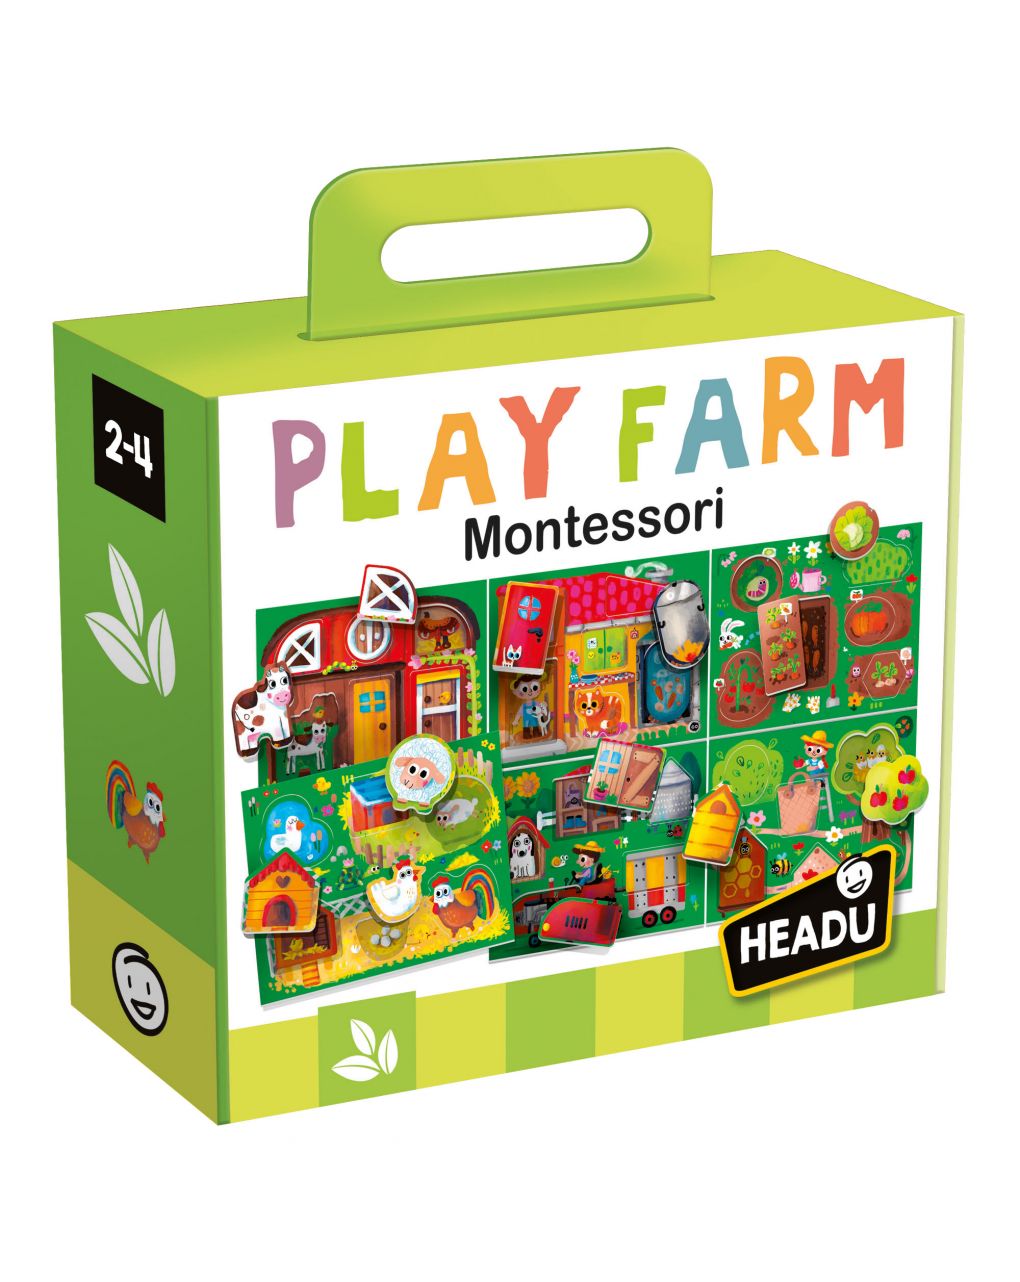 Play farm montessori. prime scoperte nella fattoria! 2/4 anni - headu